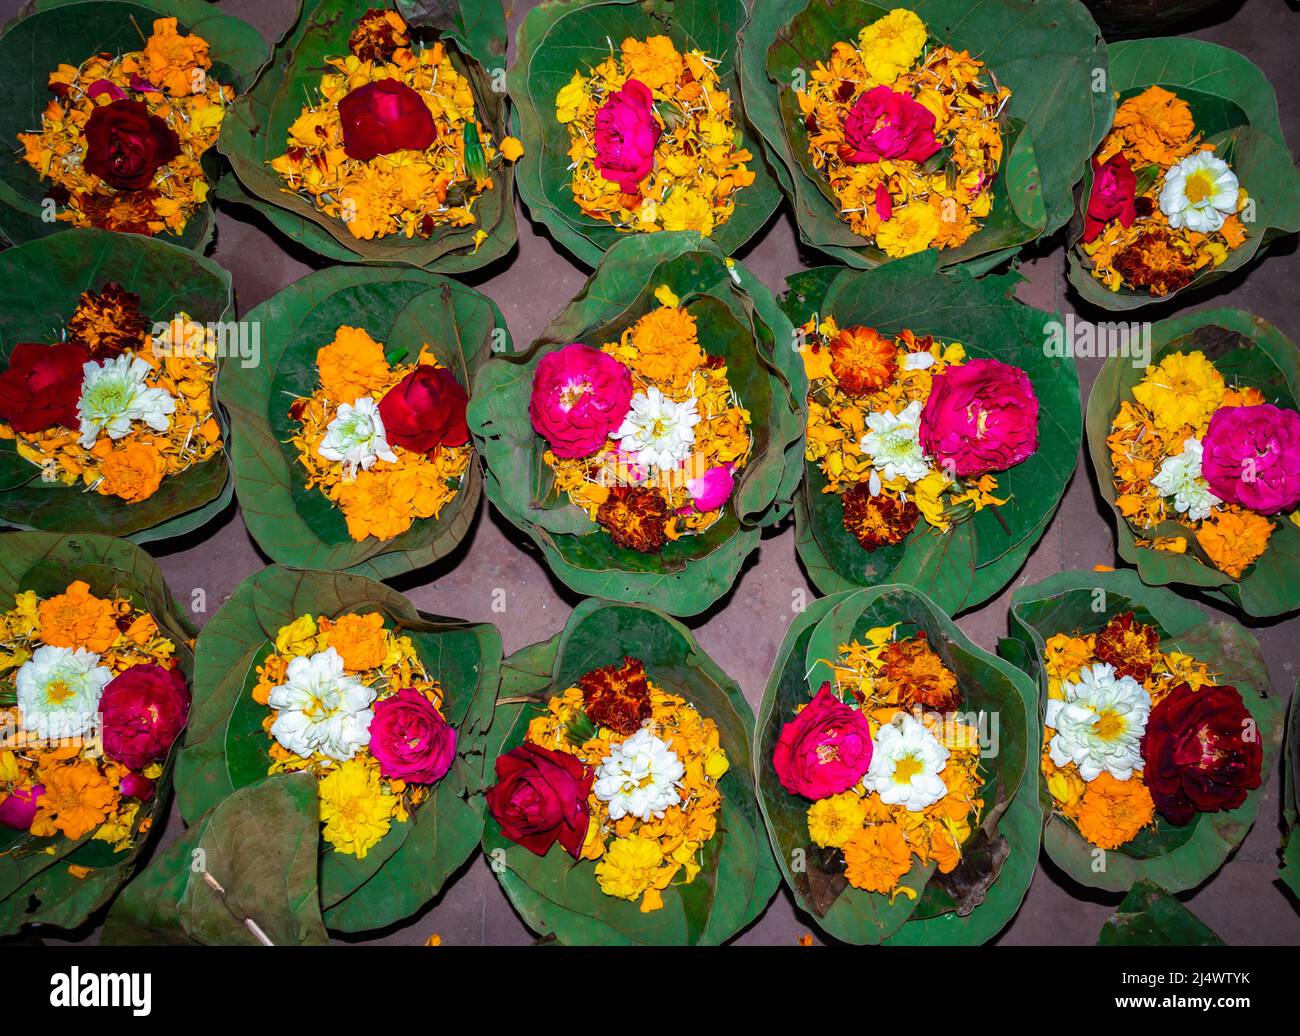 pentola verde in foglia piena di fiori colorati al tempio dall'angolo superiore Foto Stock